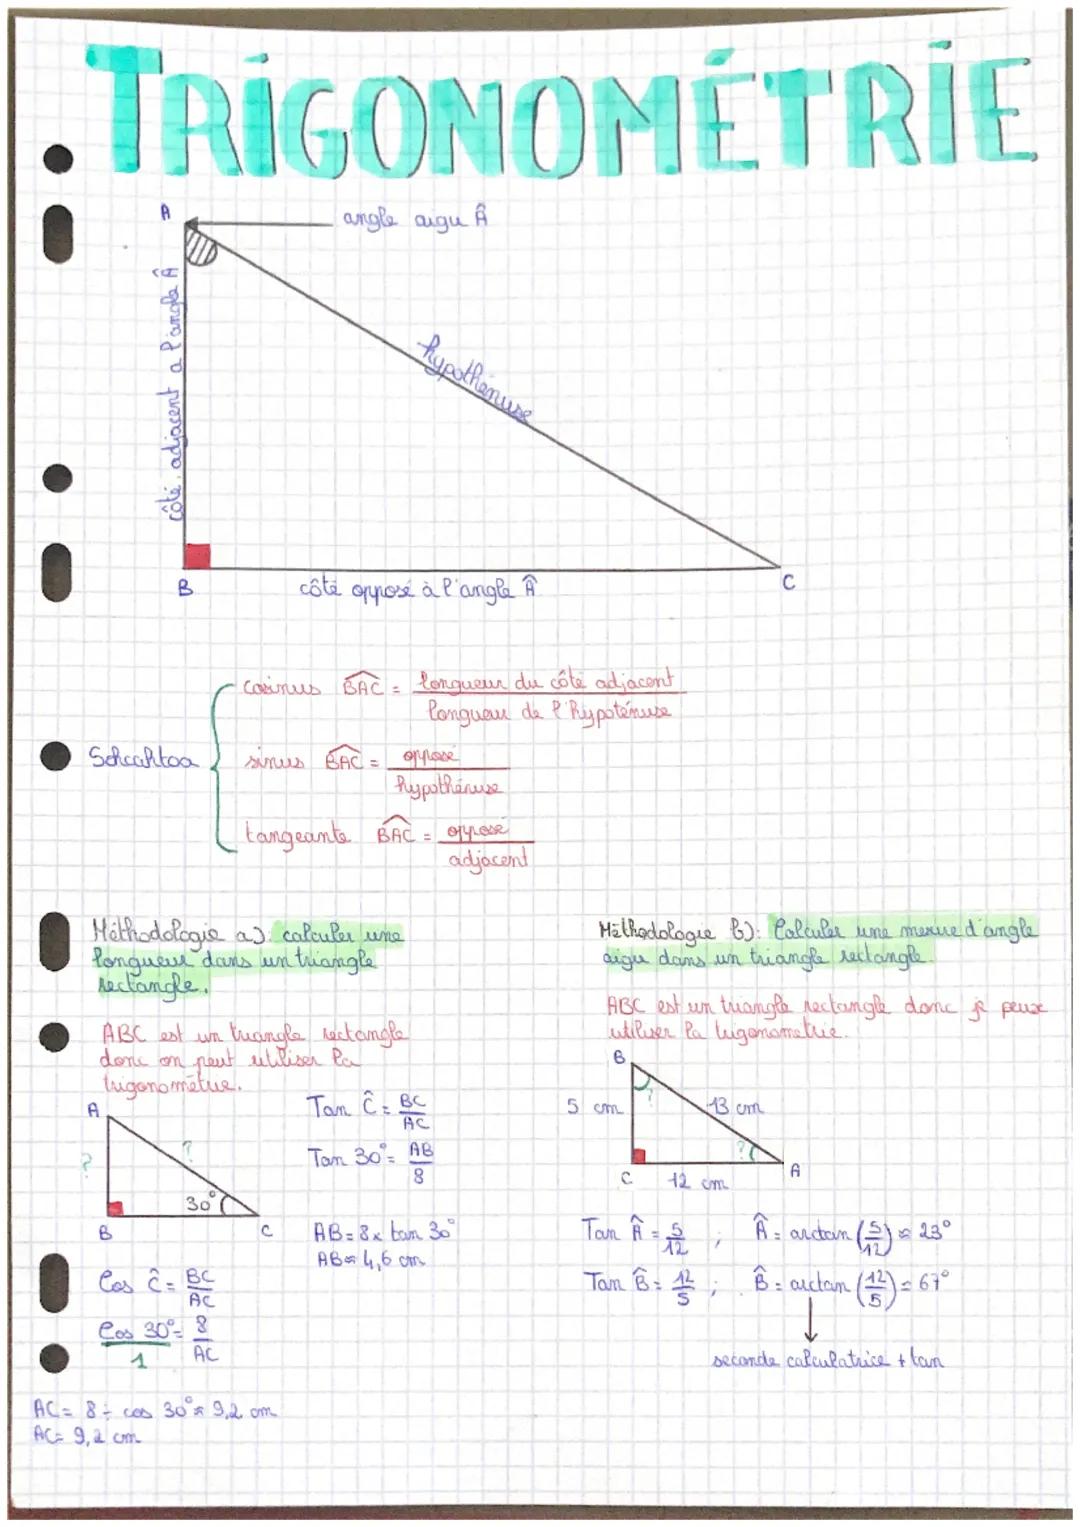 TRIGONOMÉTRIE
A
Schaahtoa
A
côté, adjacent a l'angle Â
C
B
B
30
Méthodologie a calculer une
longueur dans un triangle
rectangle.
Cos ĉ= BC
A